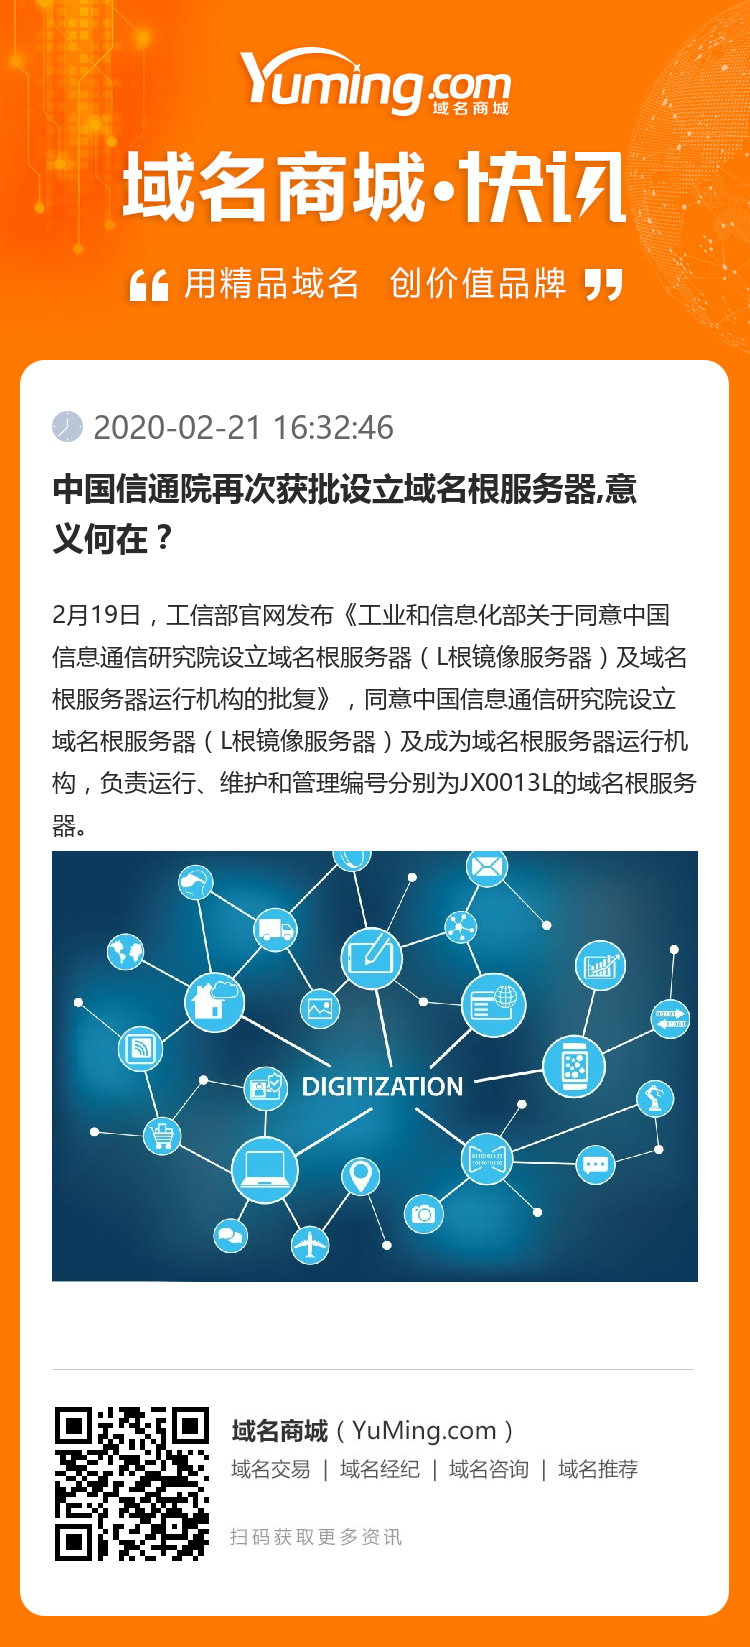 中国信通院再次获批设立域名根服务器,意义何在？